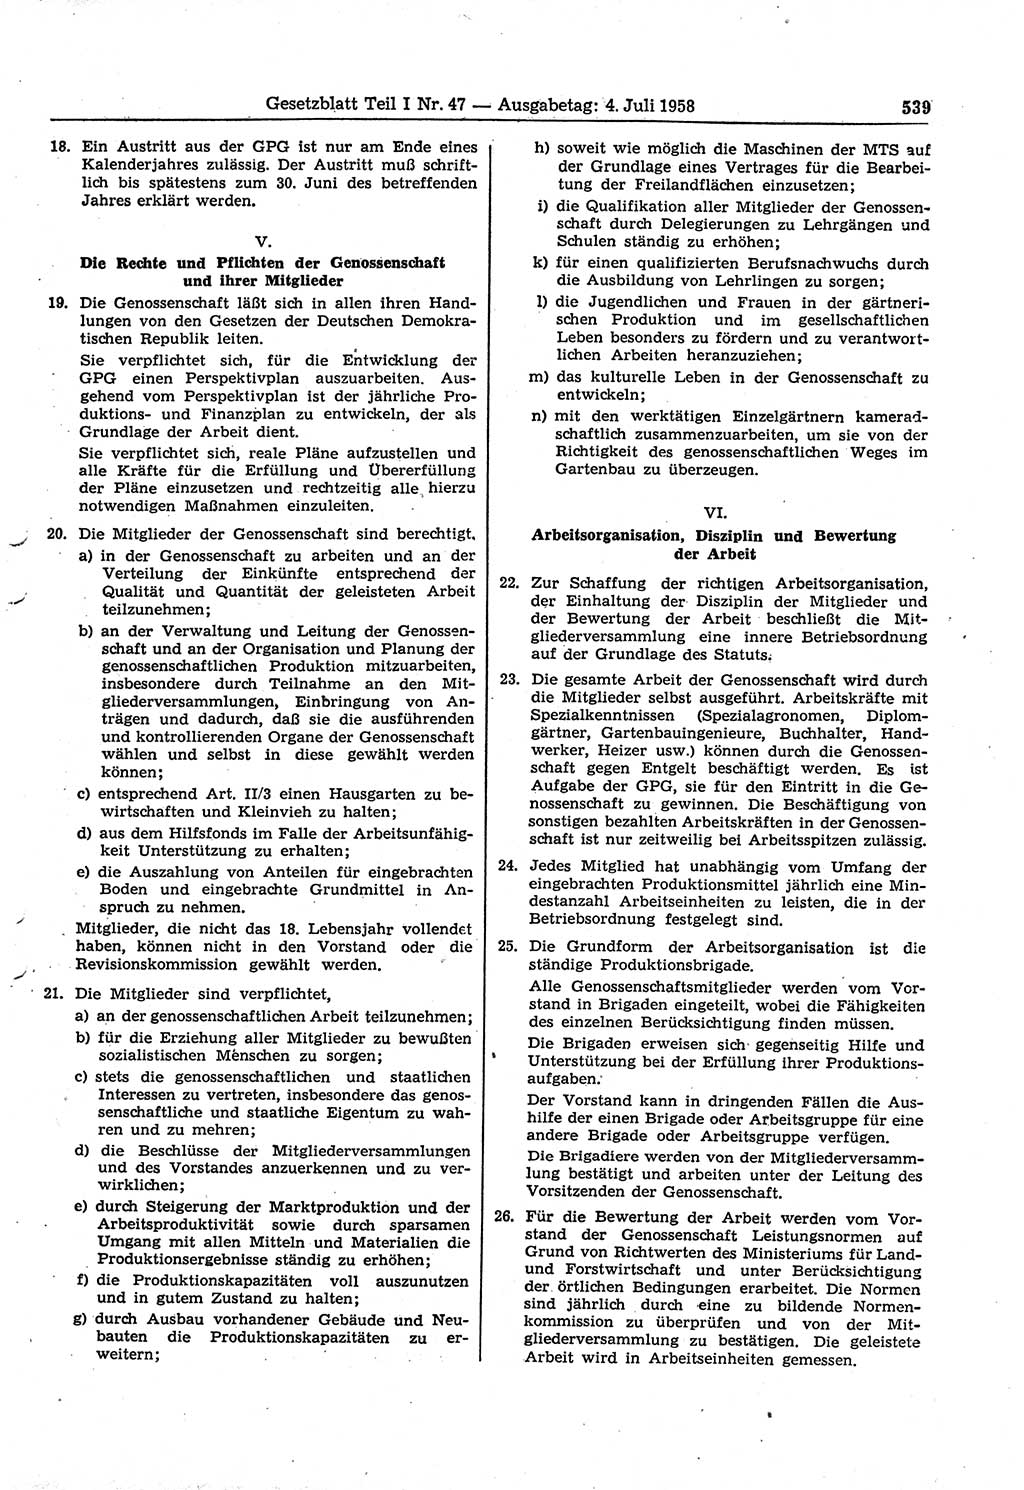 Gesetzblatt (GBl.) der Deutschen Demokratischen Republik (DDR) Teil Ⅰ 1958, Seite 539 (GBl. DDR Ⅰ 1958, S. 539)